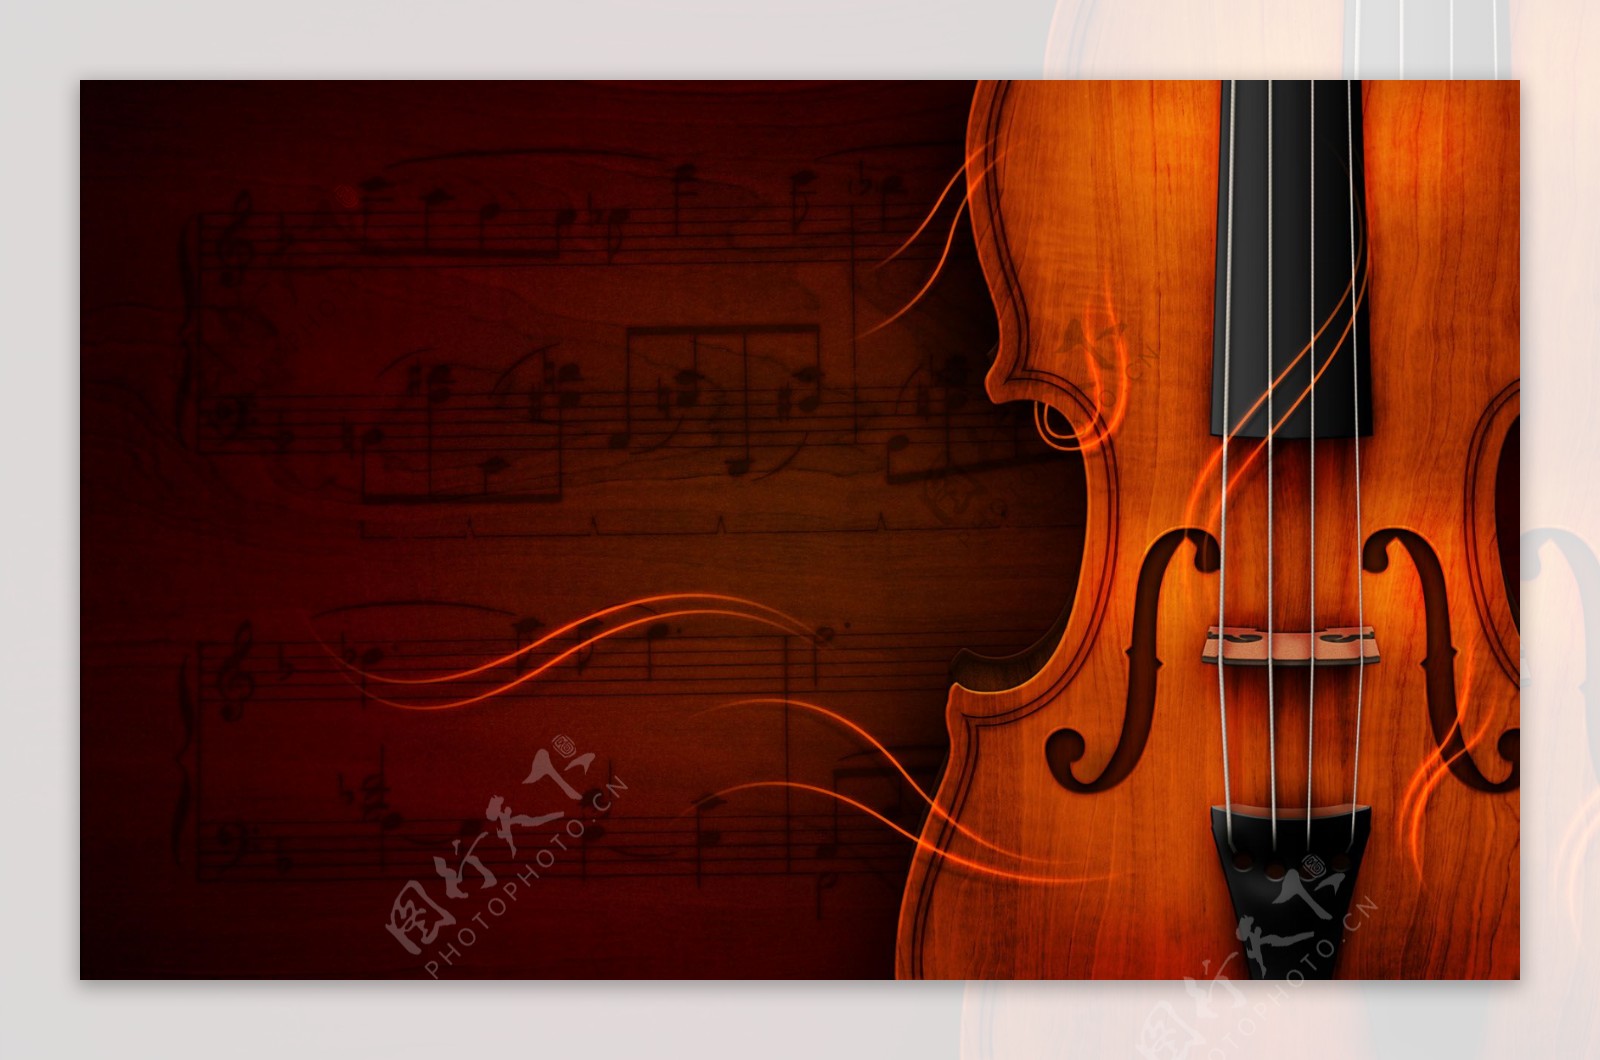 小提琴背景图